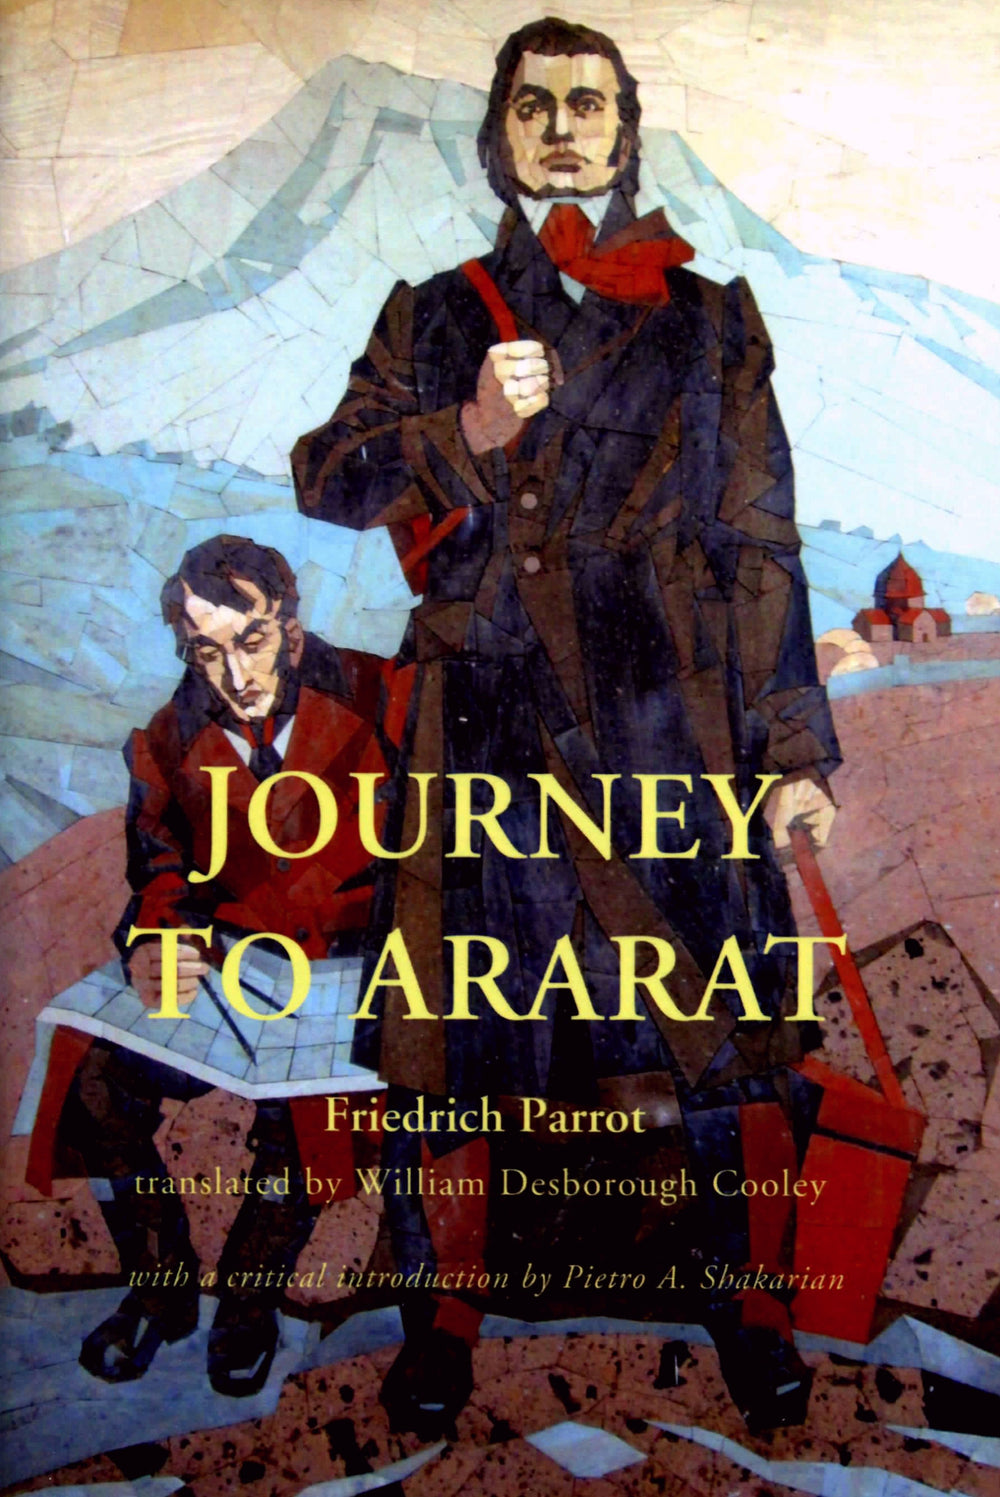 Journey to Ararat